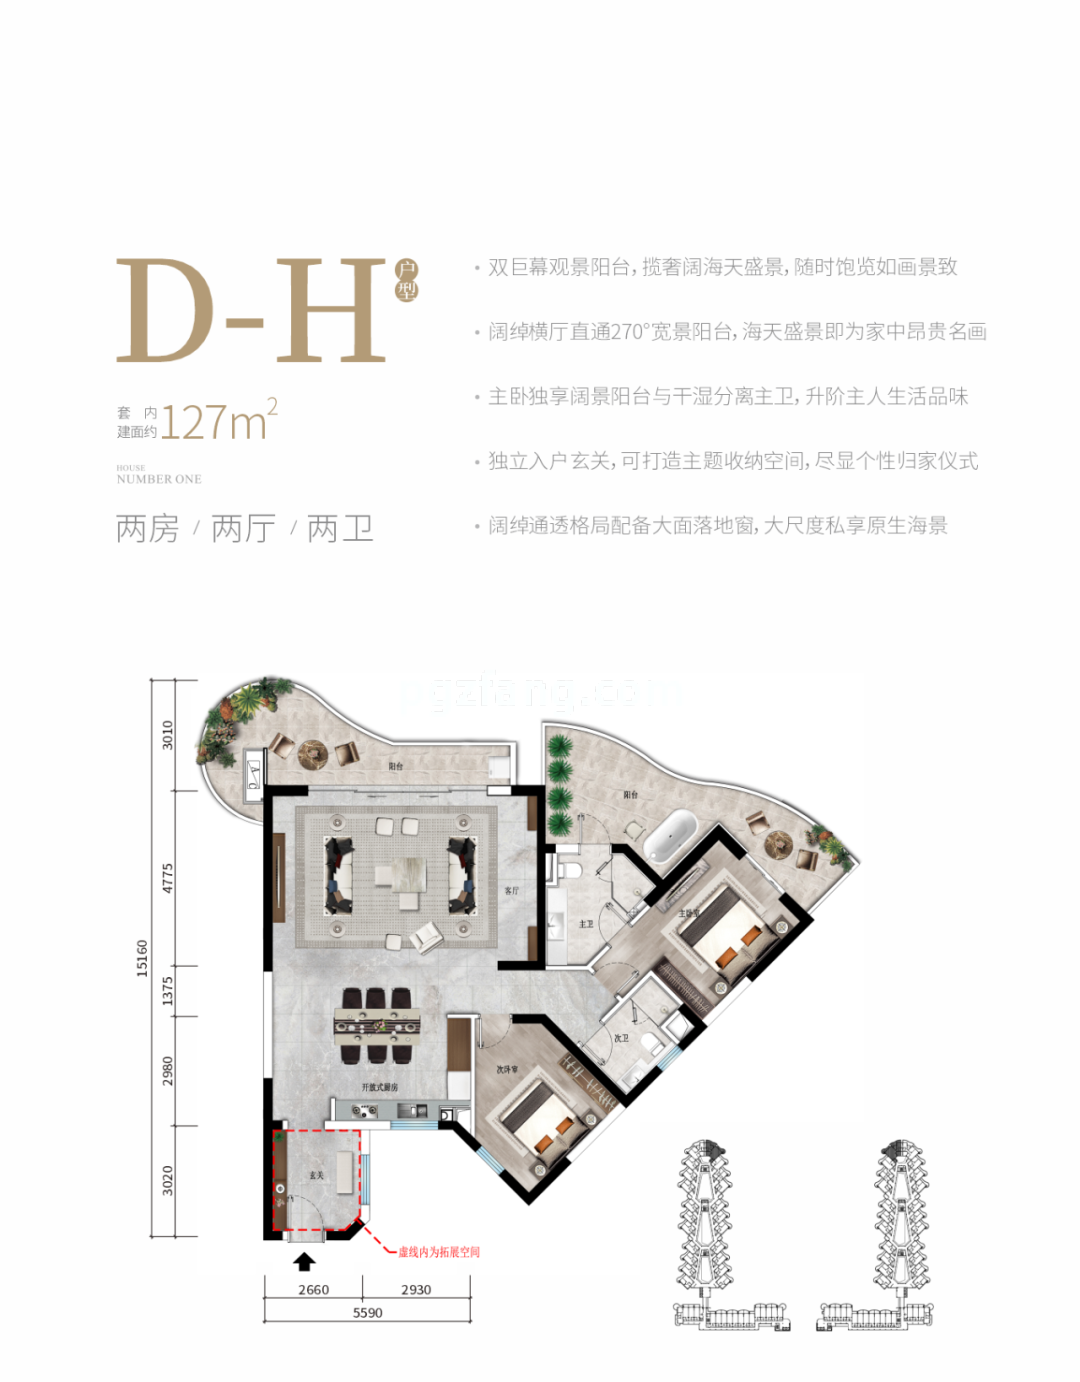 产权式酒店 D-H户型 2房2厅2卫 建面127㎡